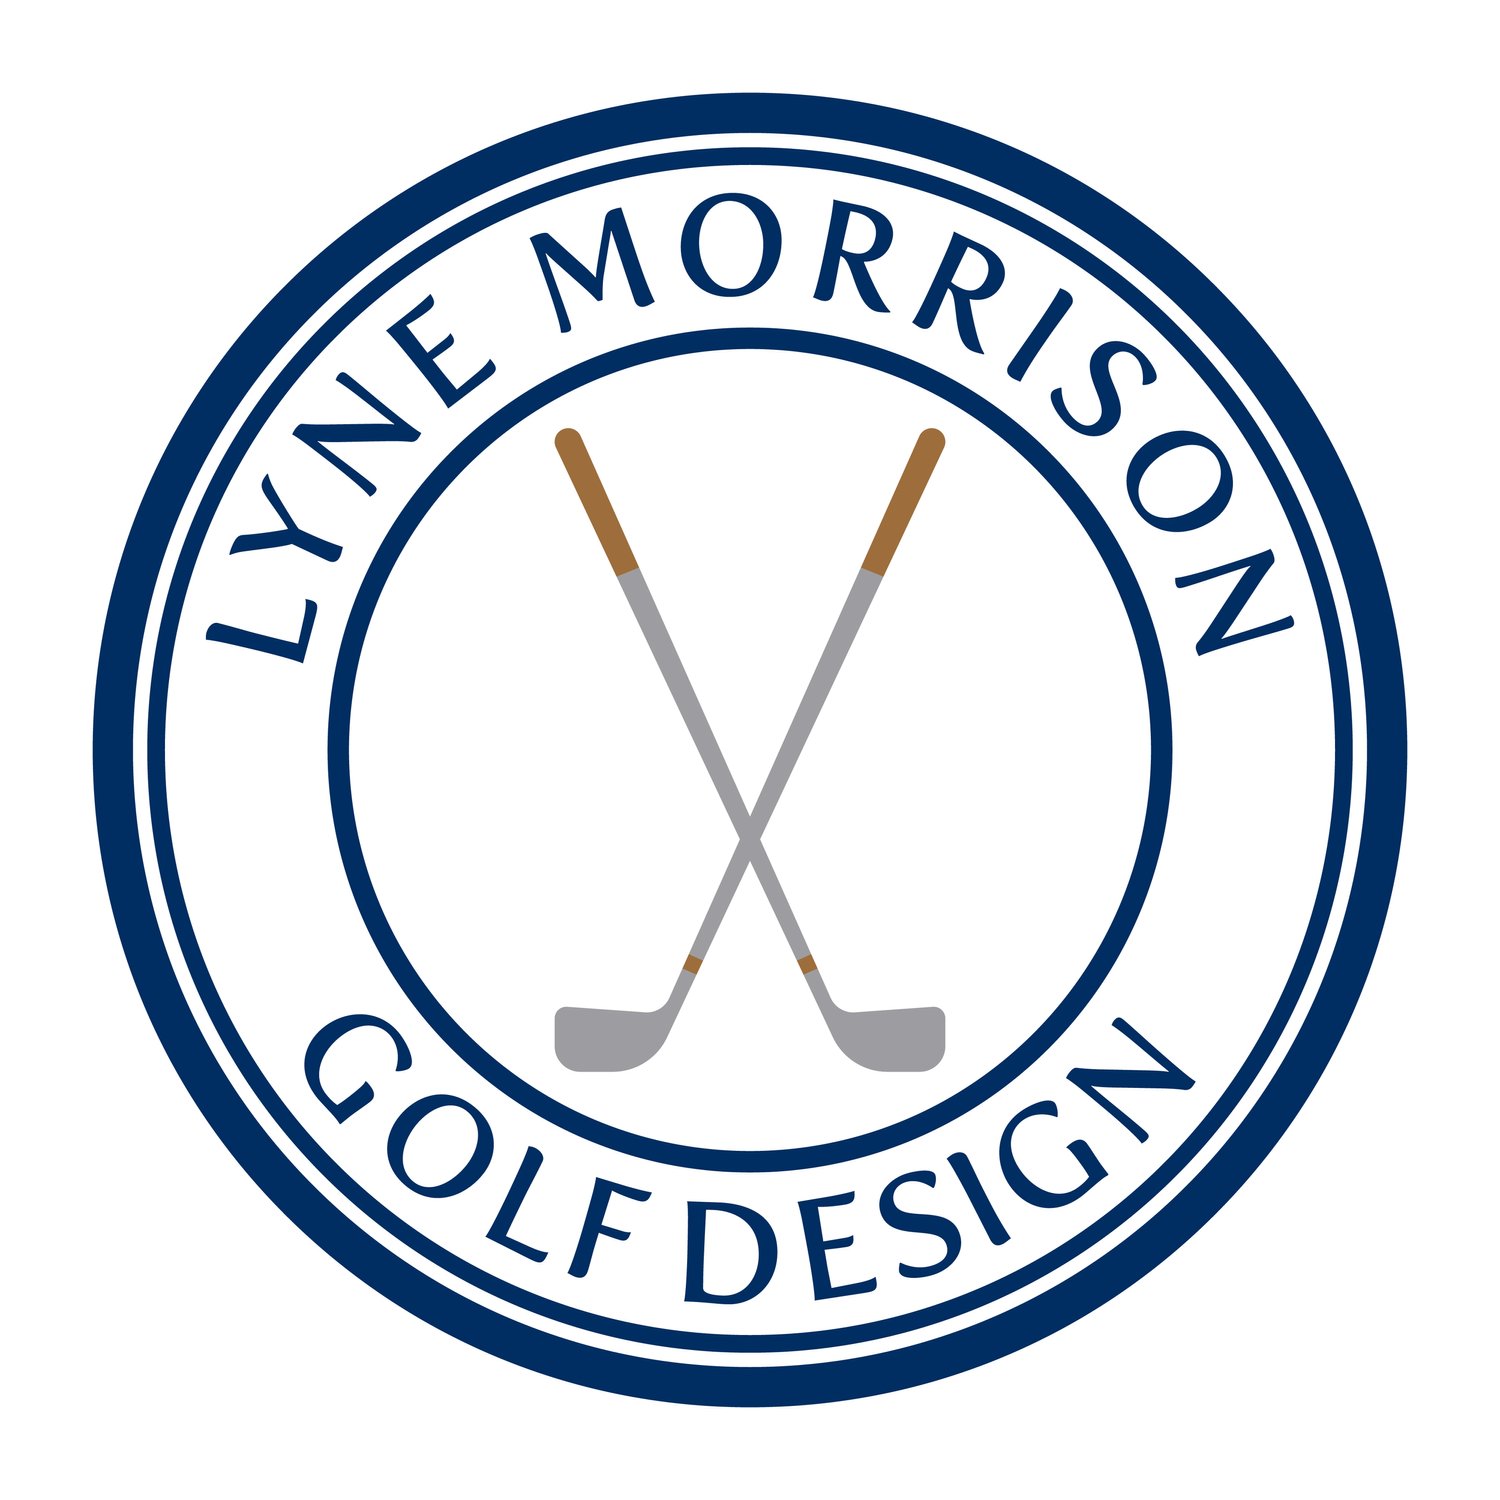  Lyne Morrison Golf Design